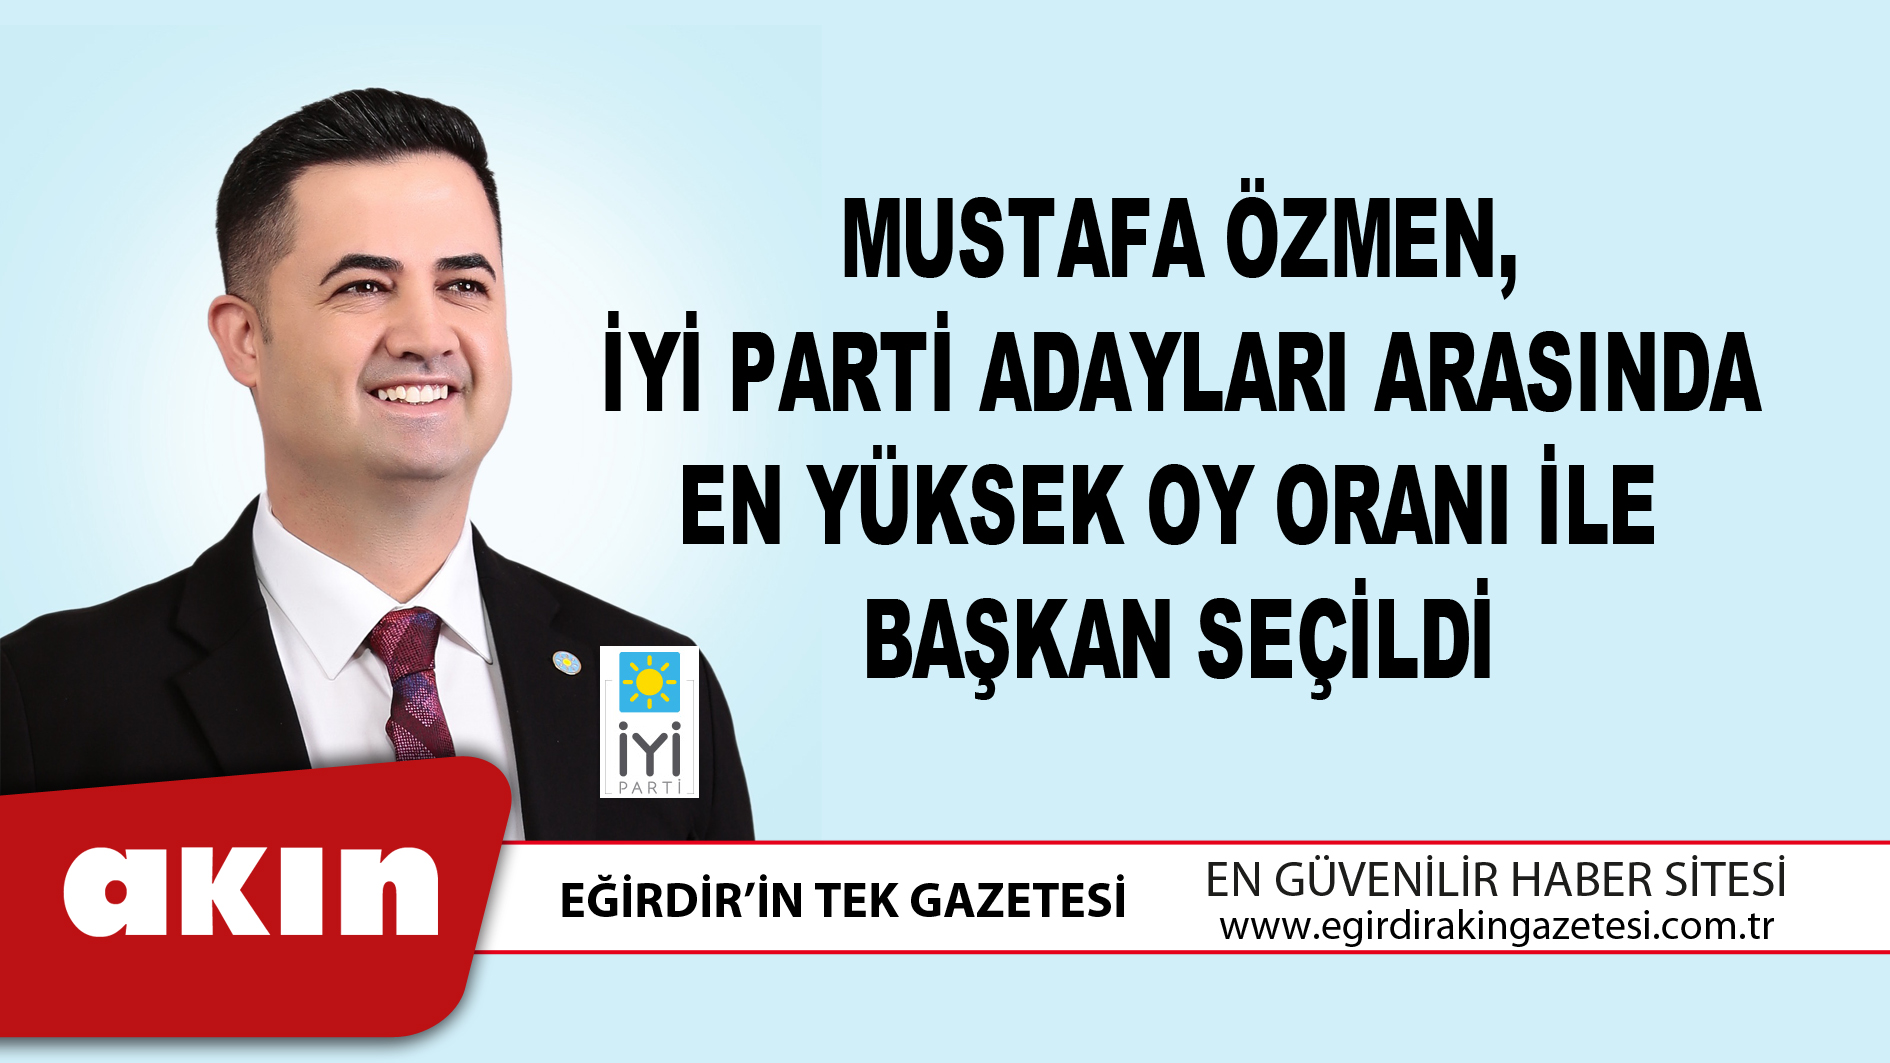 Mustafa Özmen, İyi Parti Adayları Arasında En Yüksek Oy Oranı İle  Başkan Seçildi